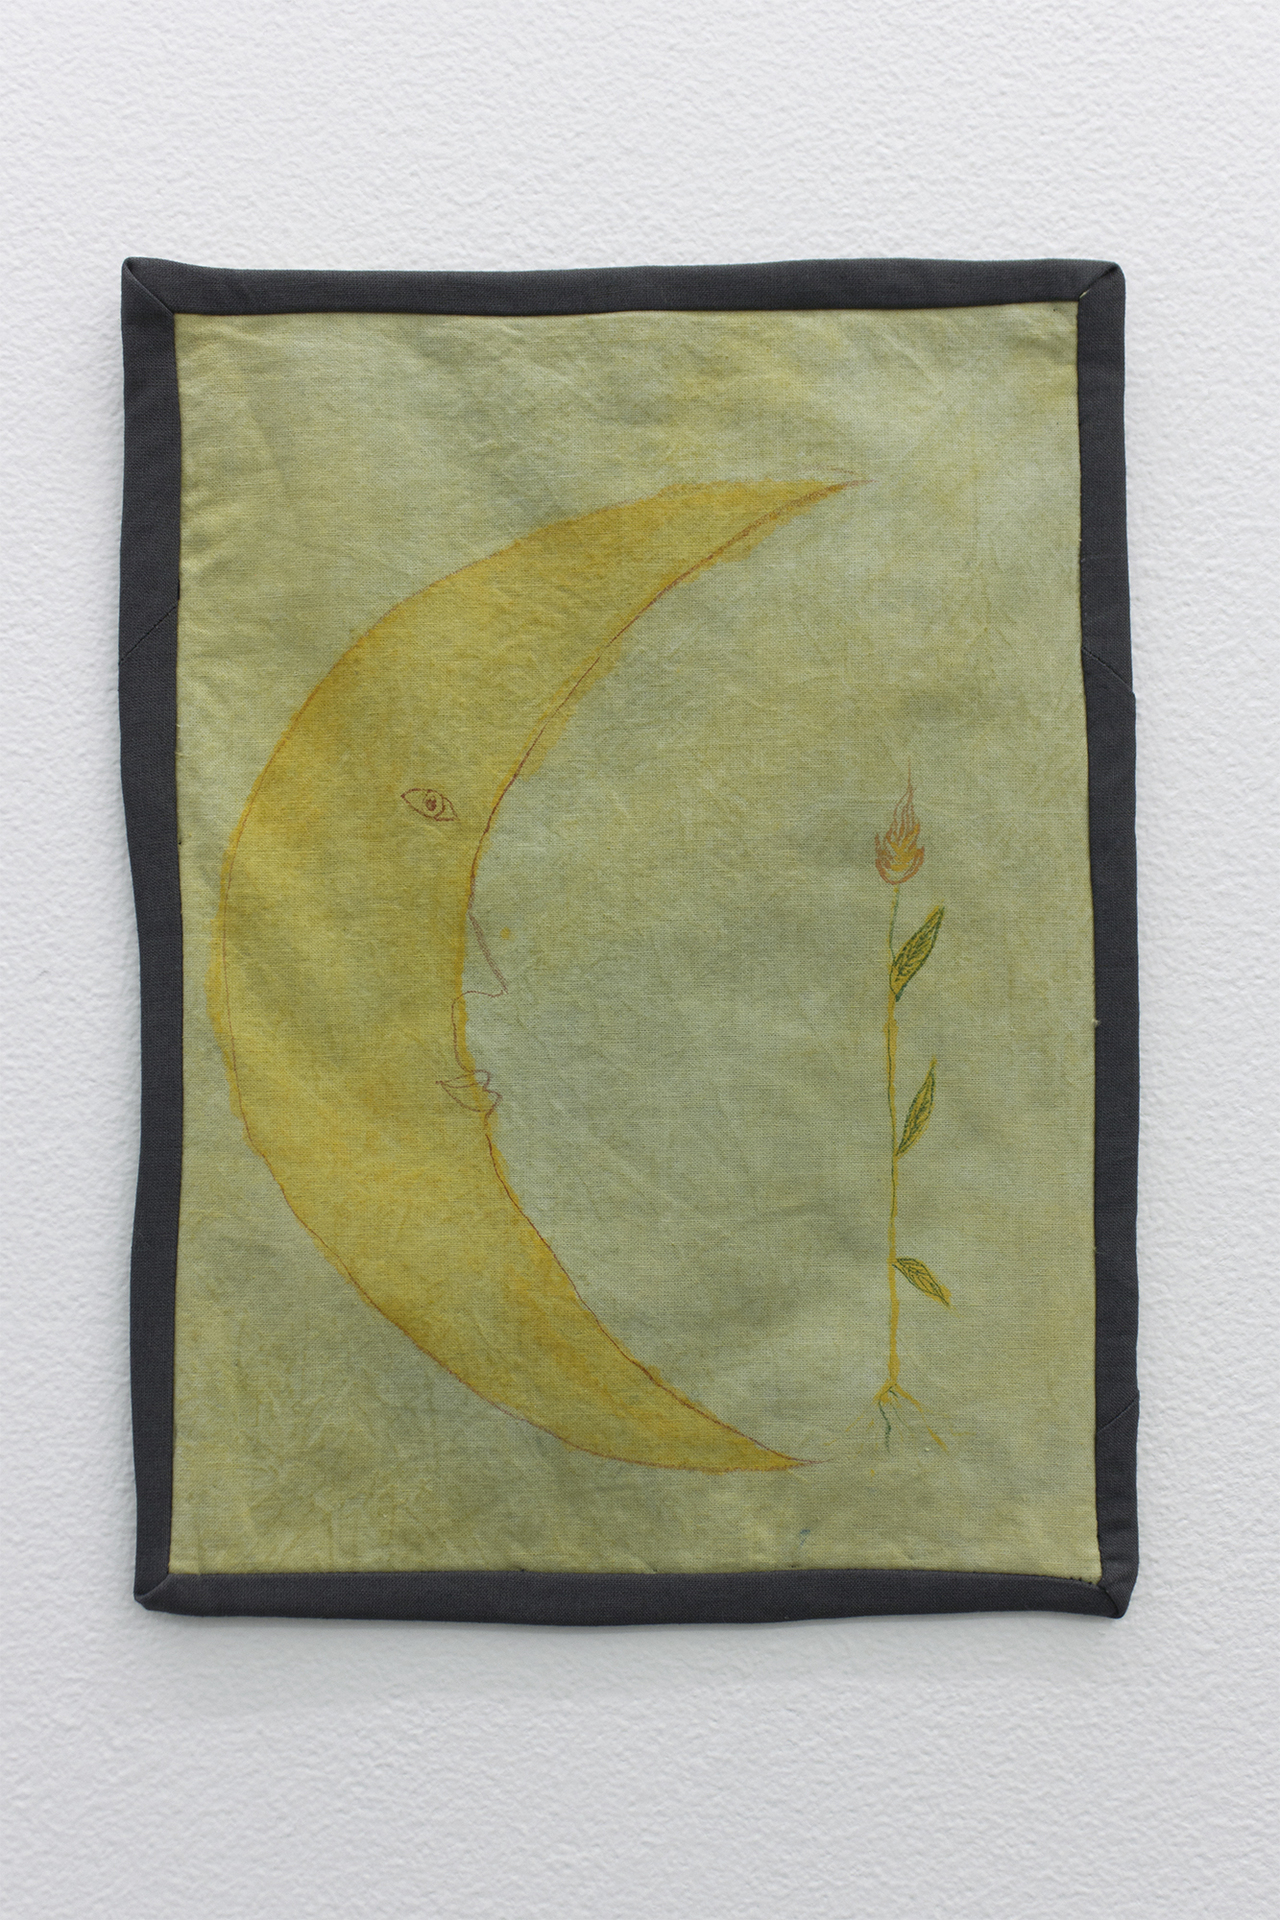 Iiris Kaarlehto & Inka Kynkäänniemi, Kuu ja tulikukka (Moon and the Fire Flower), 2020, watercolor on cotton, 22x30 cm